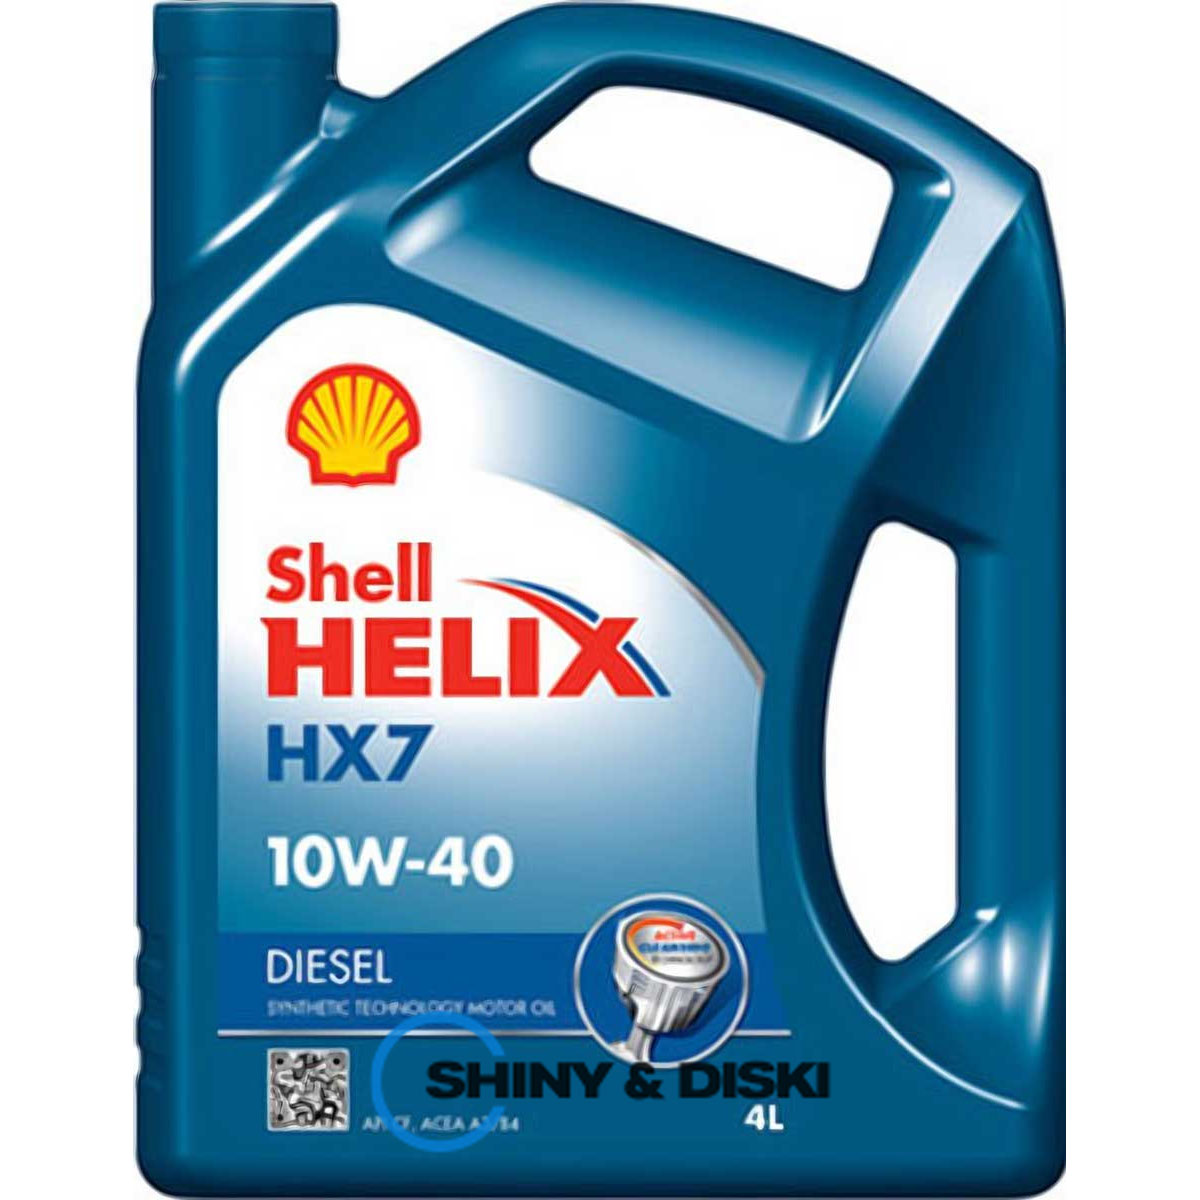 shell helix diesel hx7